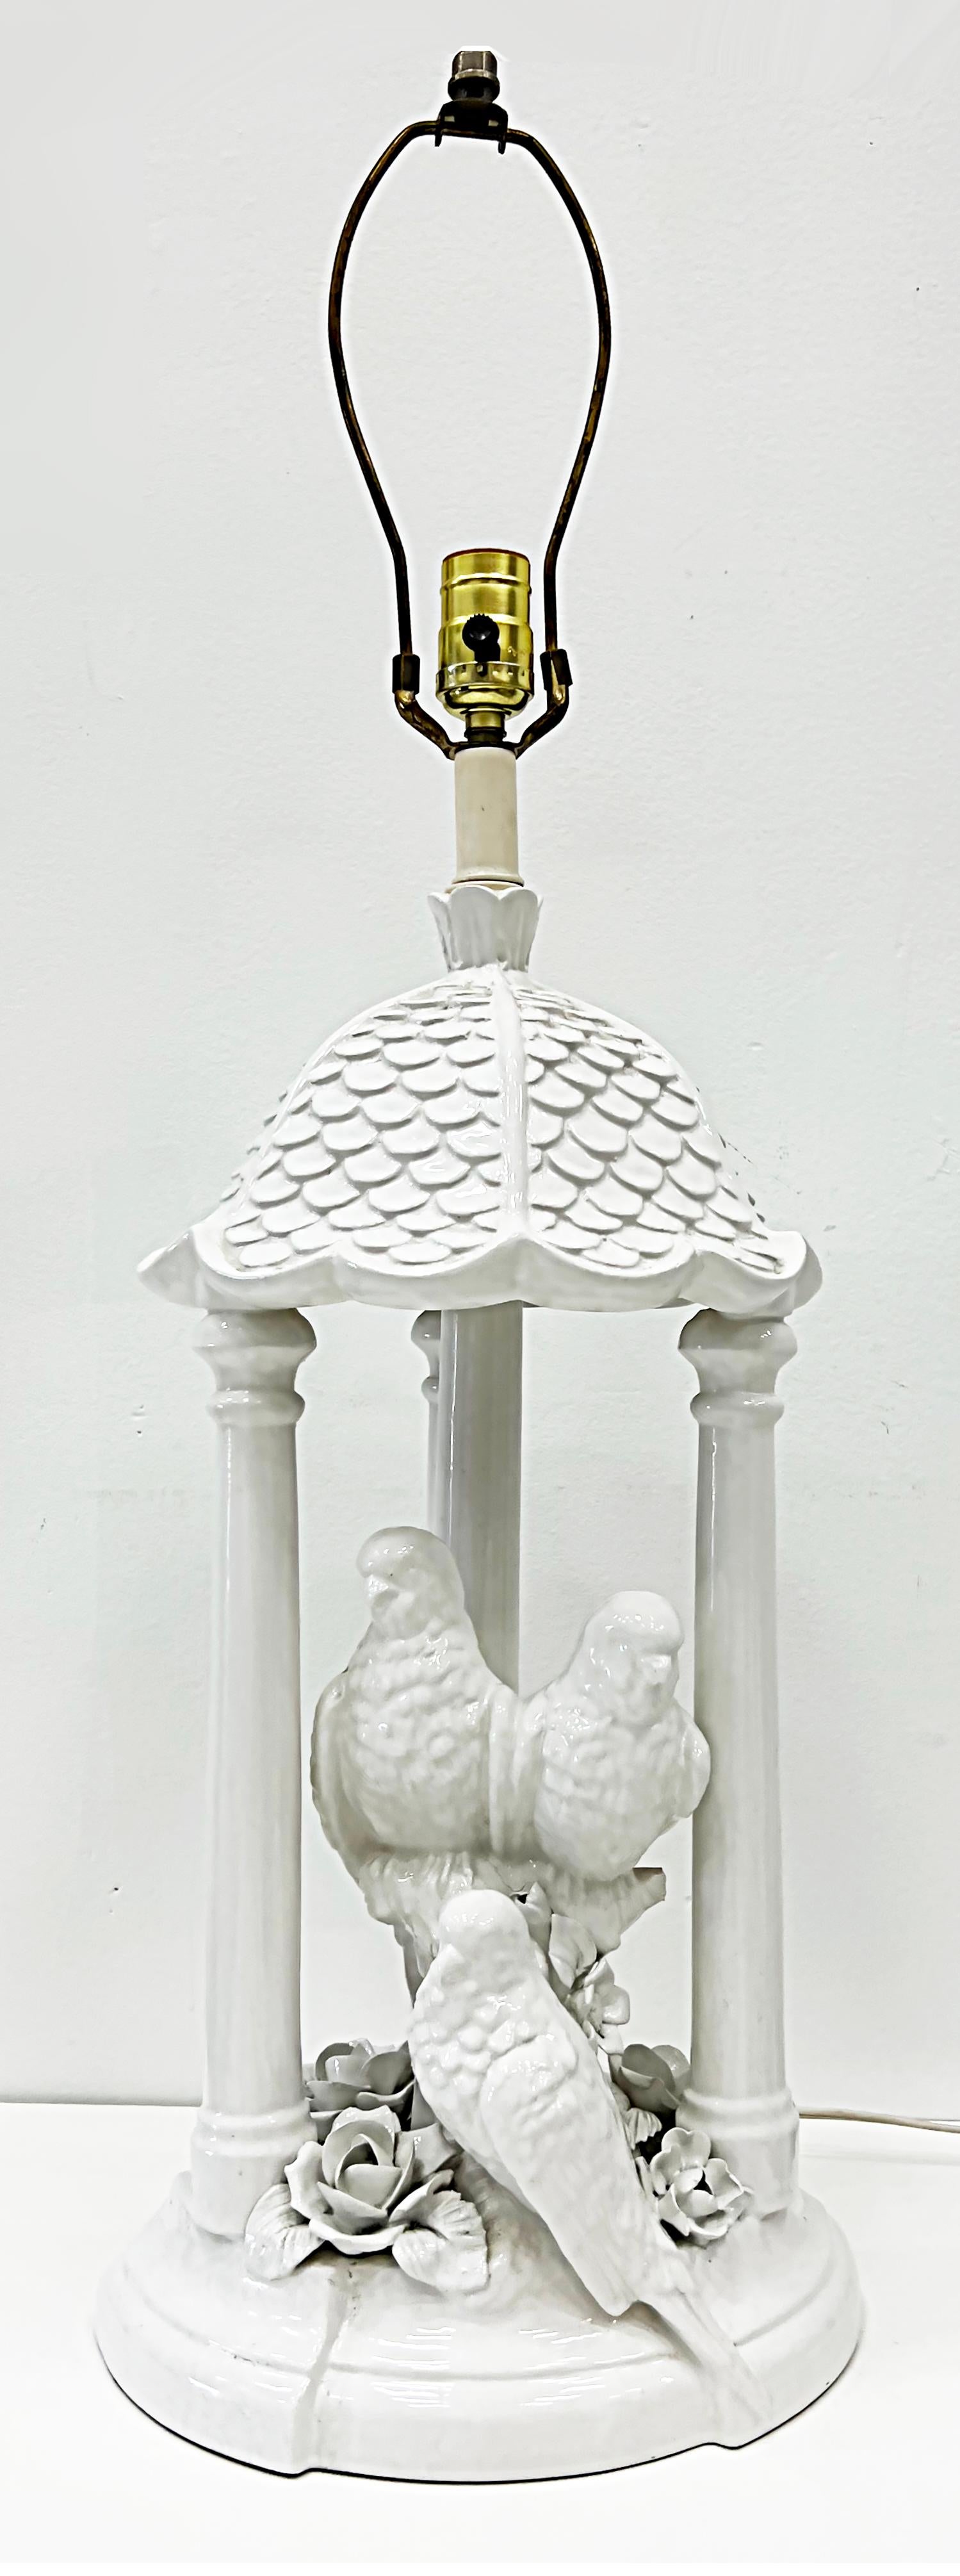 lampe de table Blanc De Chine des années 1960 avec perroquets et fleurs

Nous proposons à la vente une lampe de table Blanc de Chine des années 1960, décorée de perroquets, de colonnes sous un toit de pagode et de roses. La lampe peut accueillir